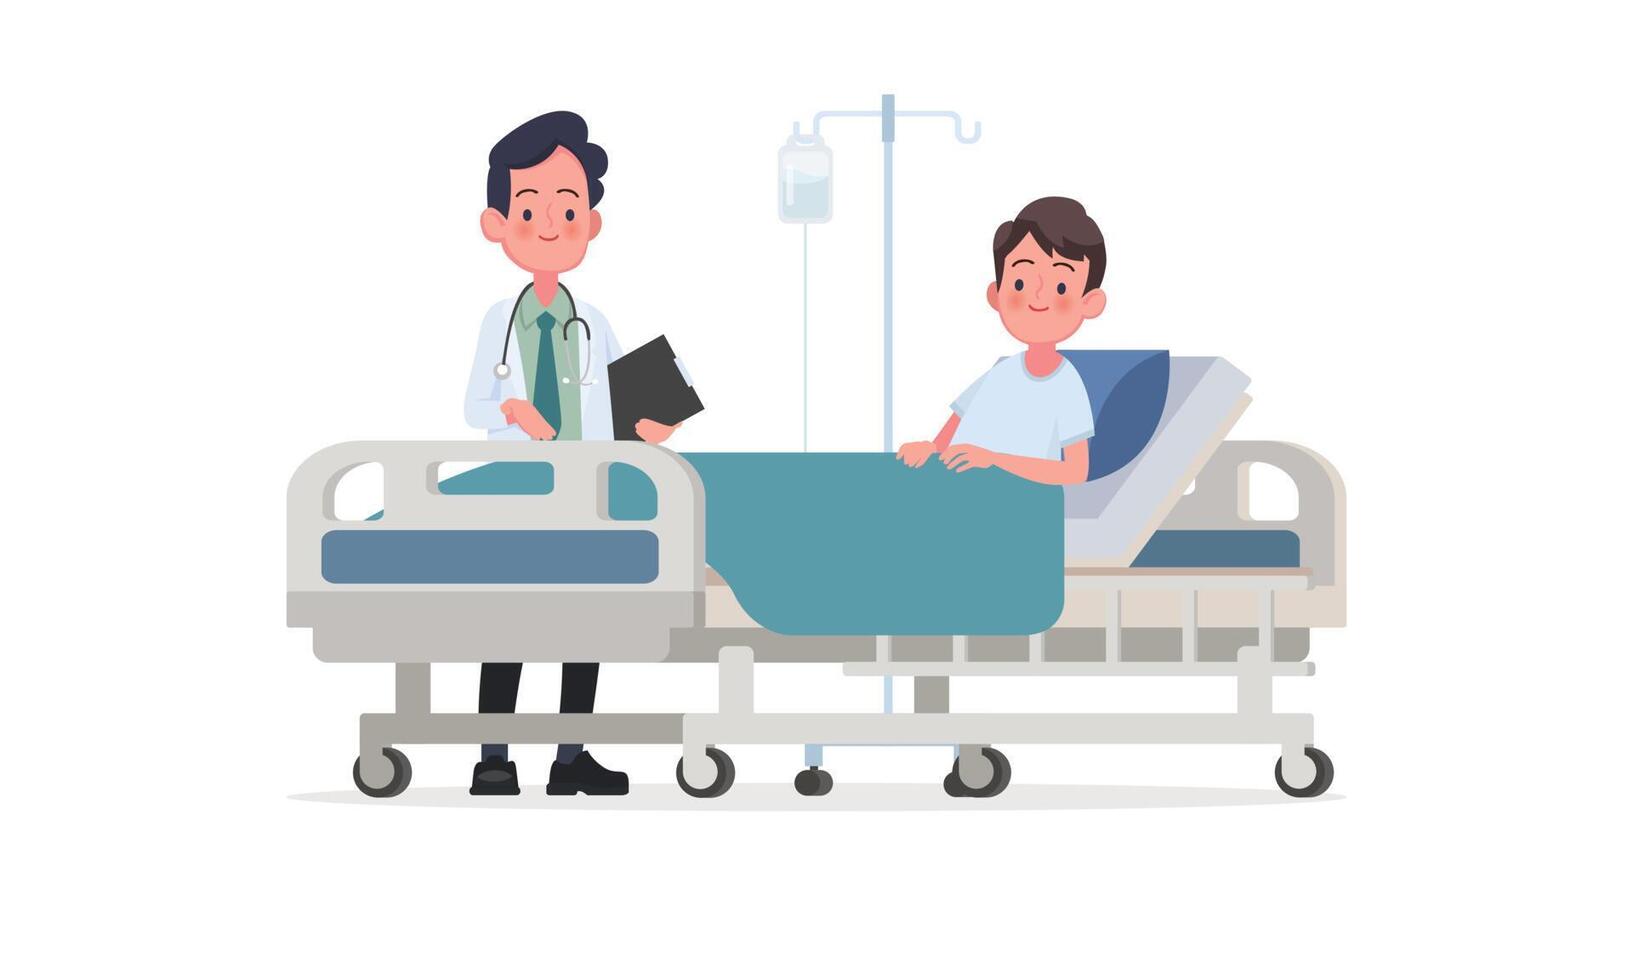 visite du médecin dans le service du patient. une personne malade est dans un lit médicalisé sous perfusion. illustration vectorielle dans un style plat vecteur